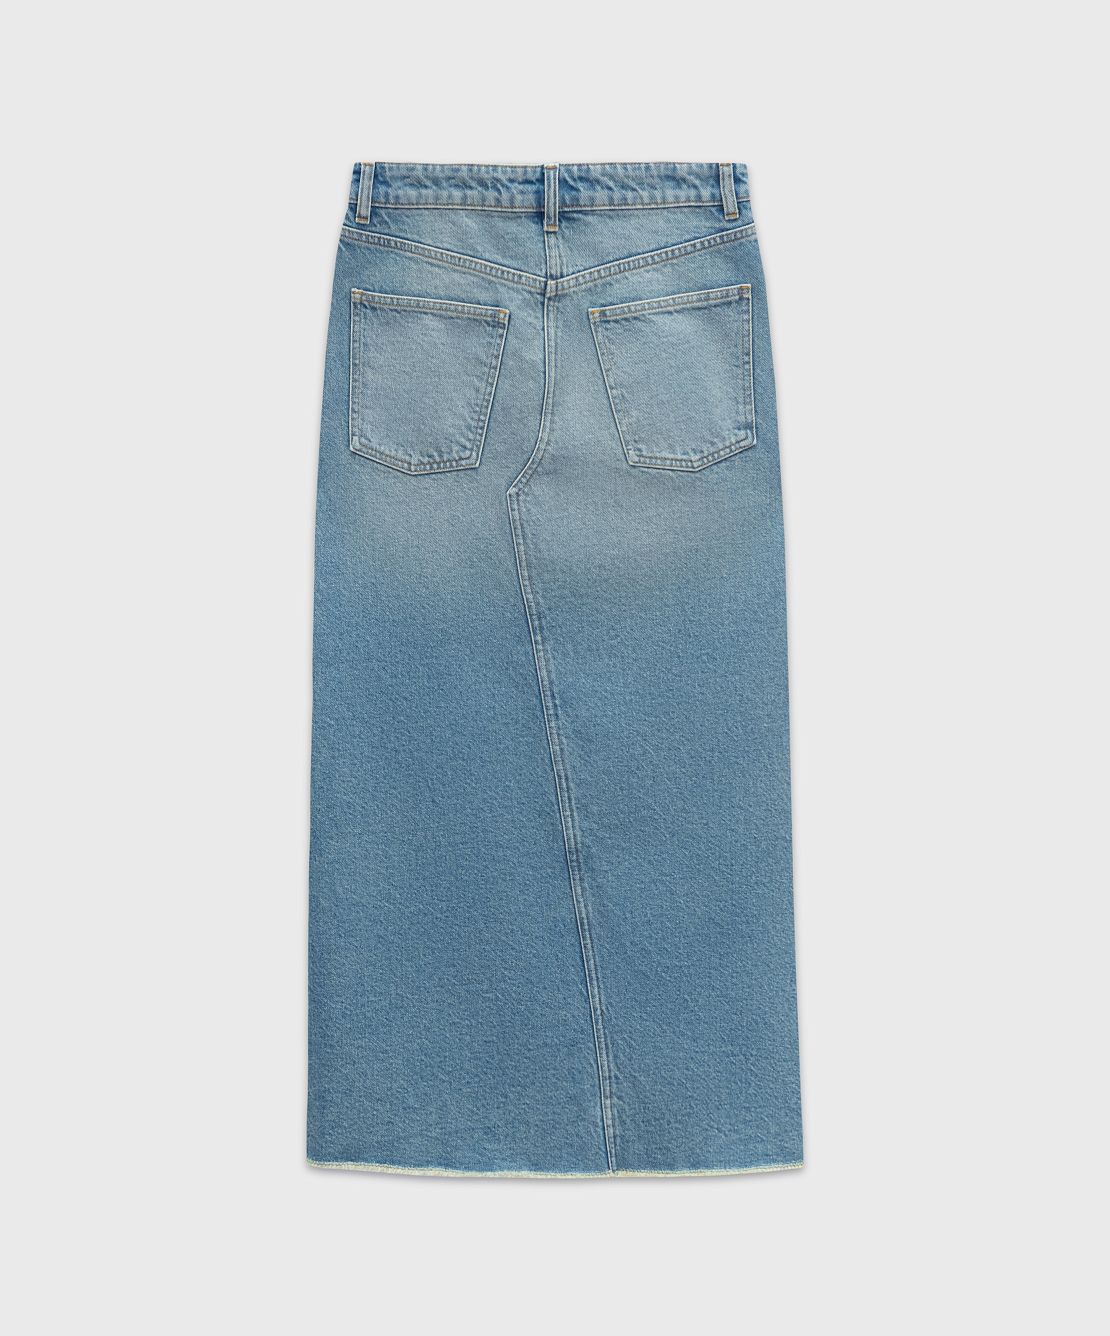 Женские джинсовые юбки с поясом или ремнем